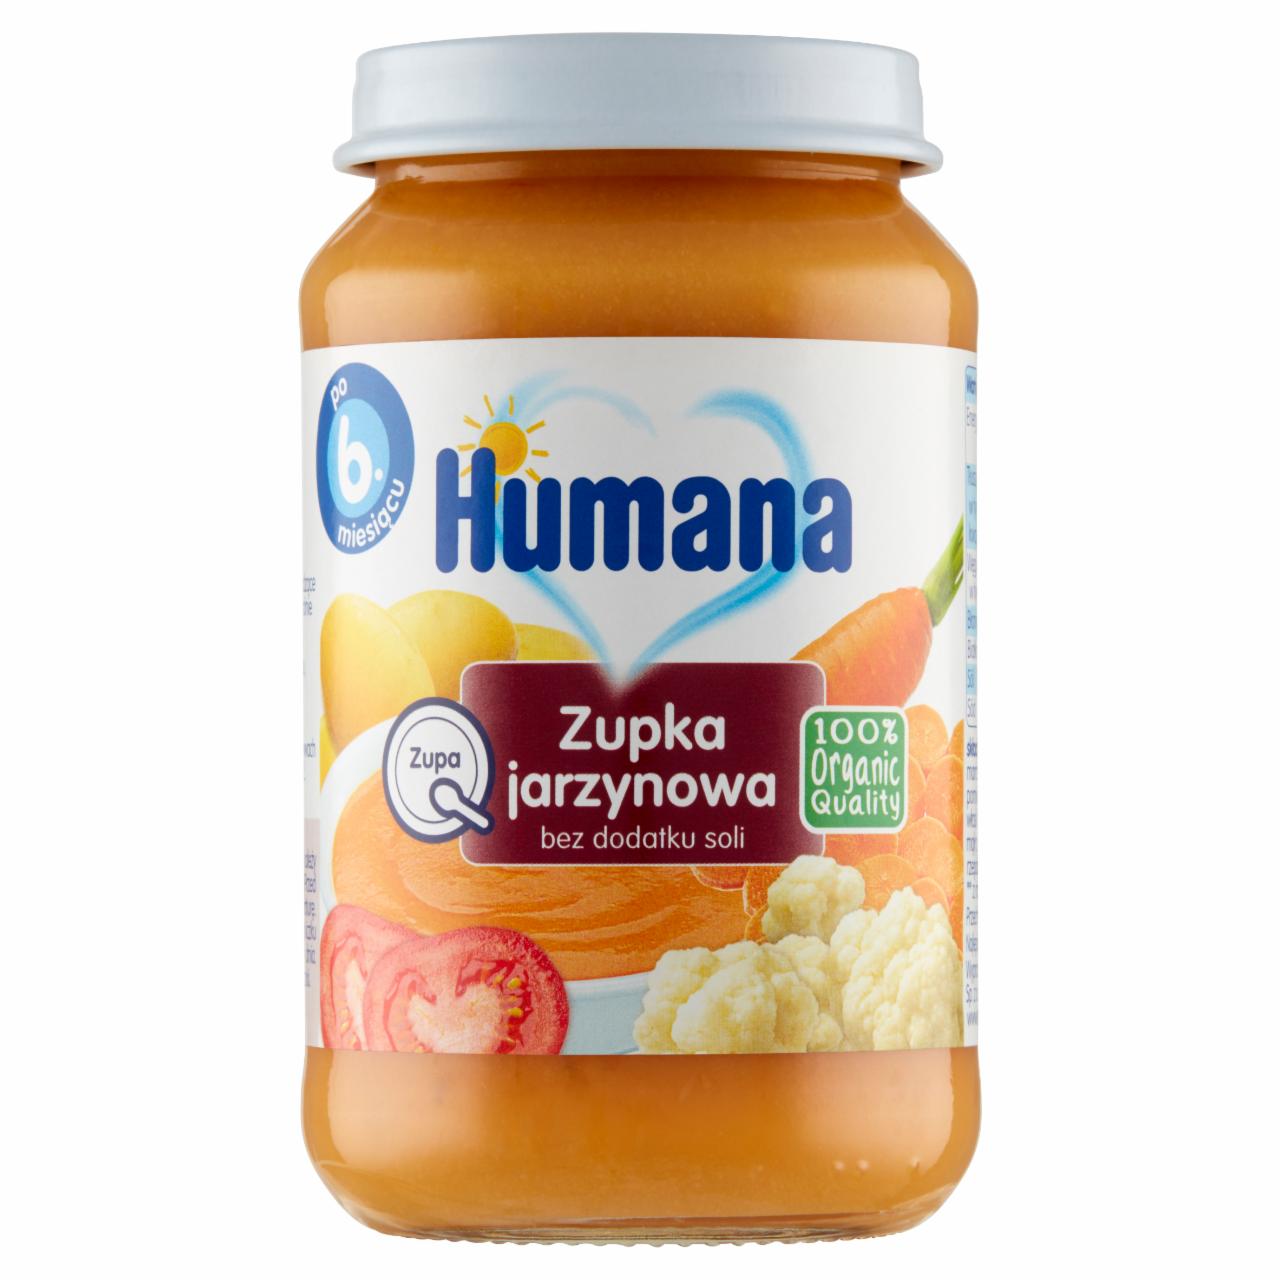 Zdjęcia - Humana 100% Organic Zupka jarzynowa po 6. miesiącu 170 ml